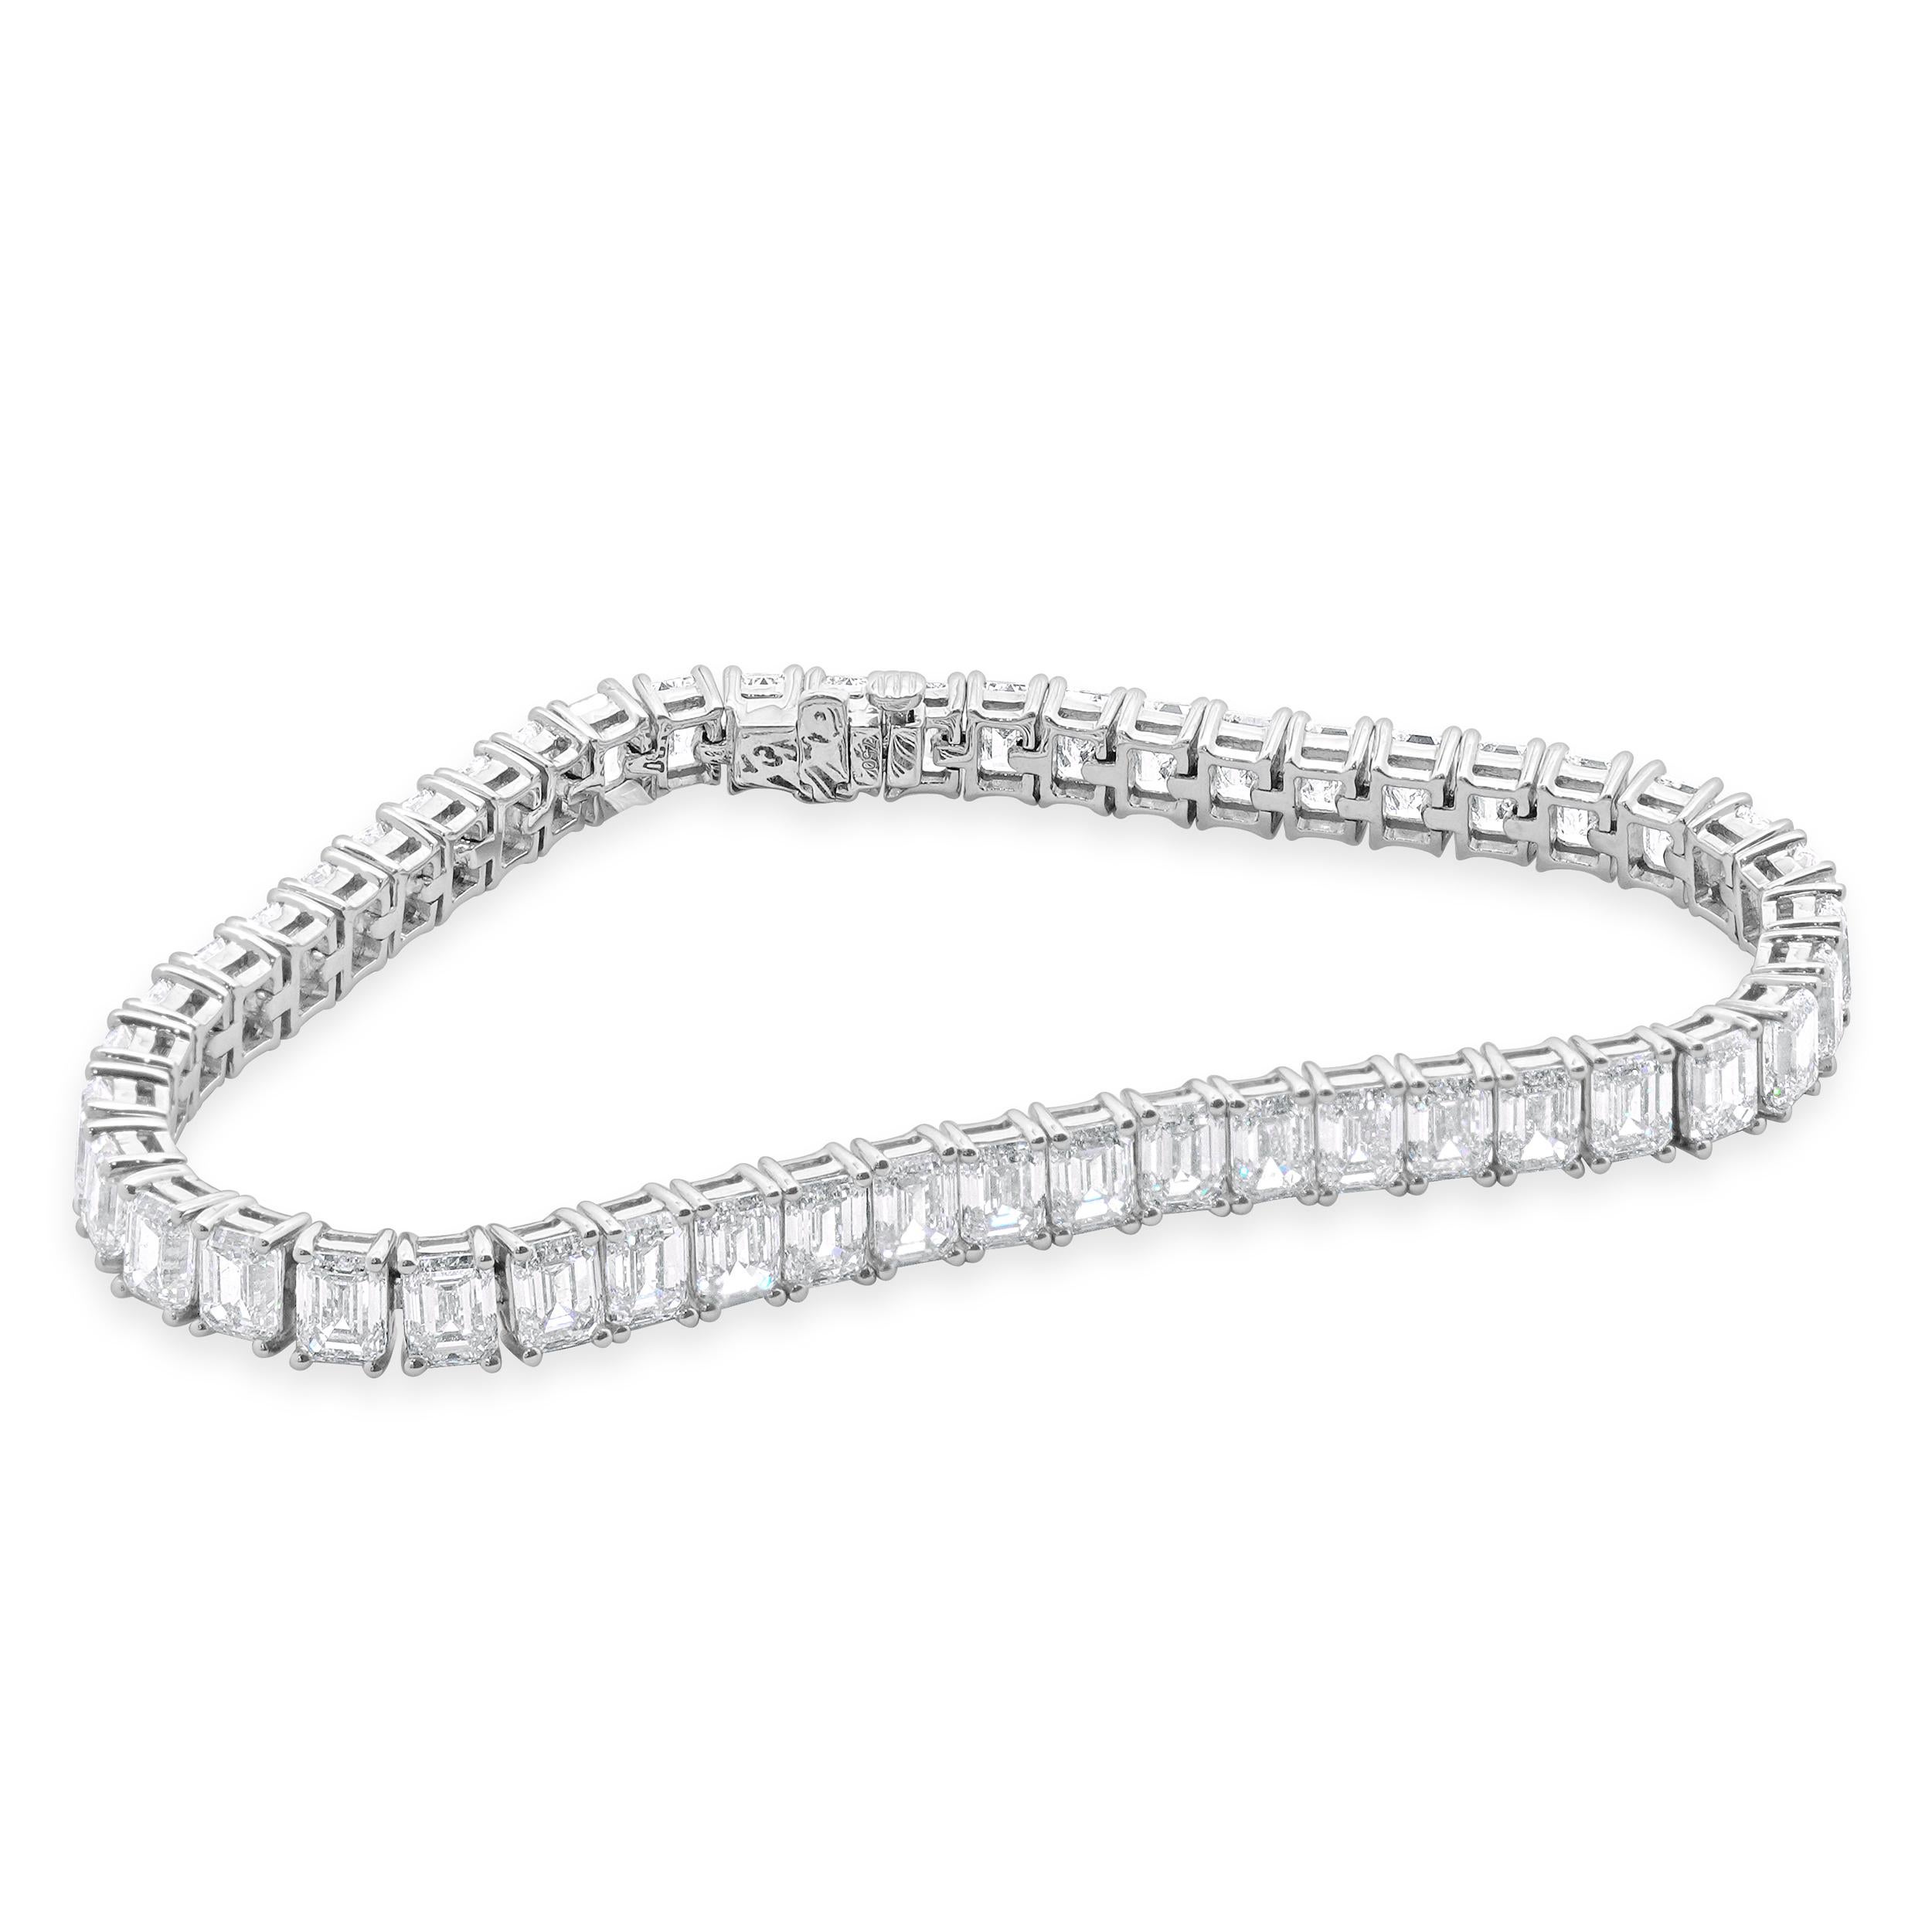 Designer : design personnalisé
MATERIAL : Or blanc 18K
Diamant : 48 taille émeraude= 18.10cttw
Couleur : G
Clarté : VS
Dimensions : le bracelet convient à un poignet de 7 pouces maximum.
Poids : 17,31 grammes
